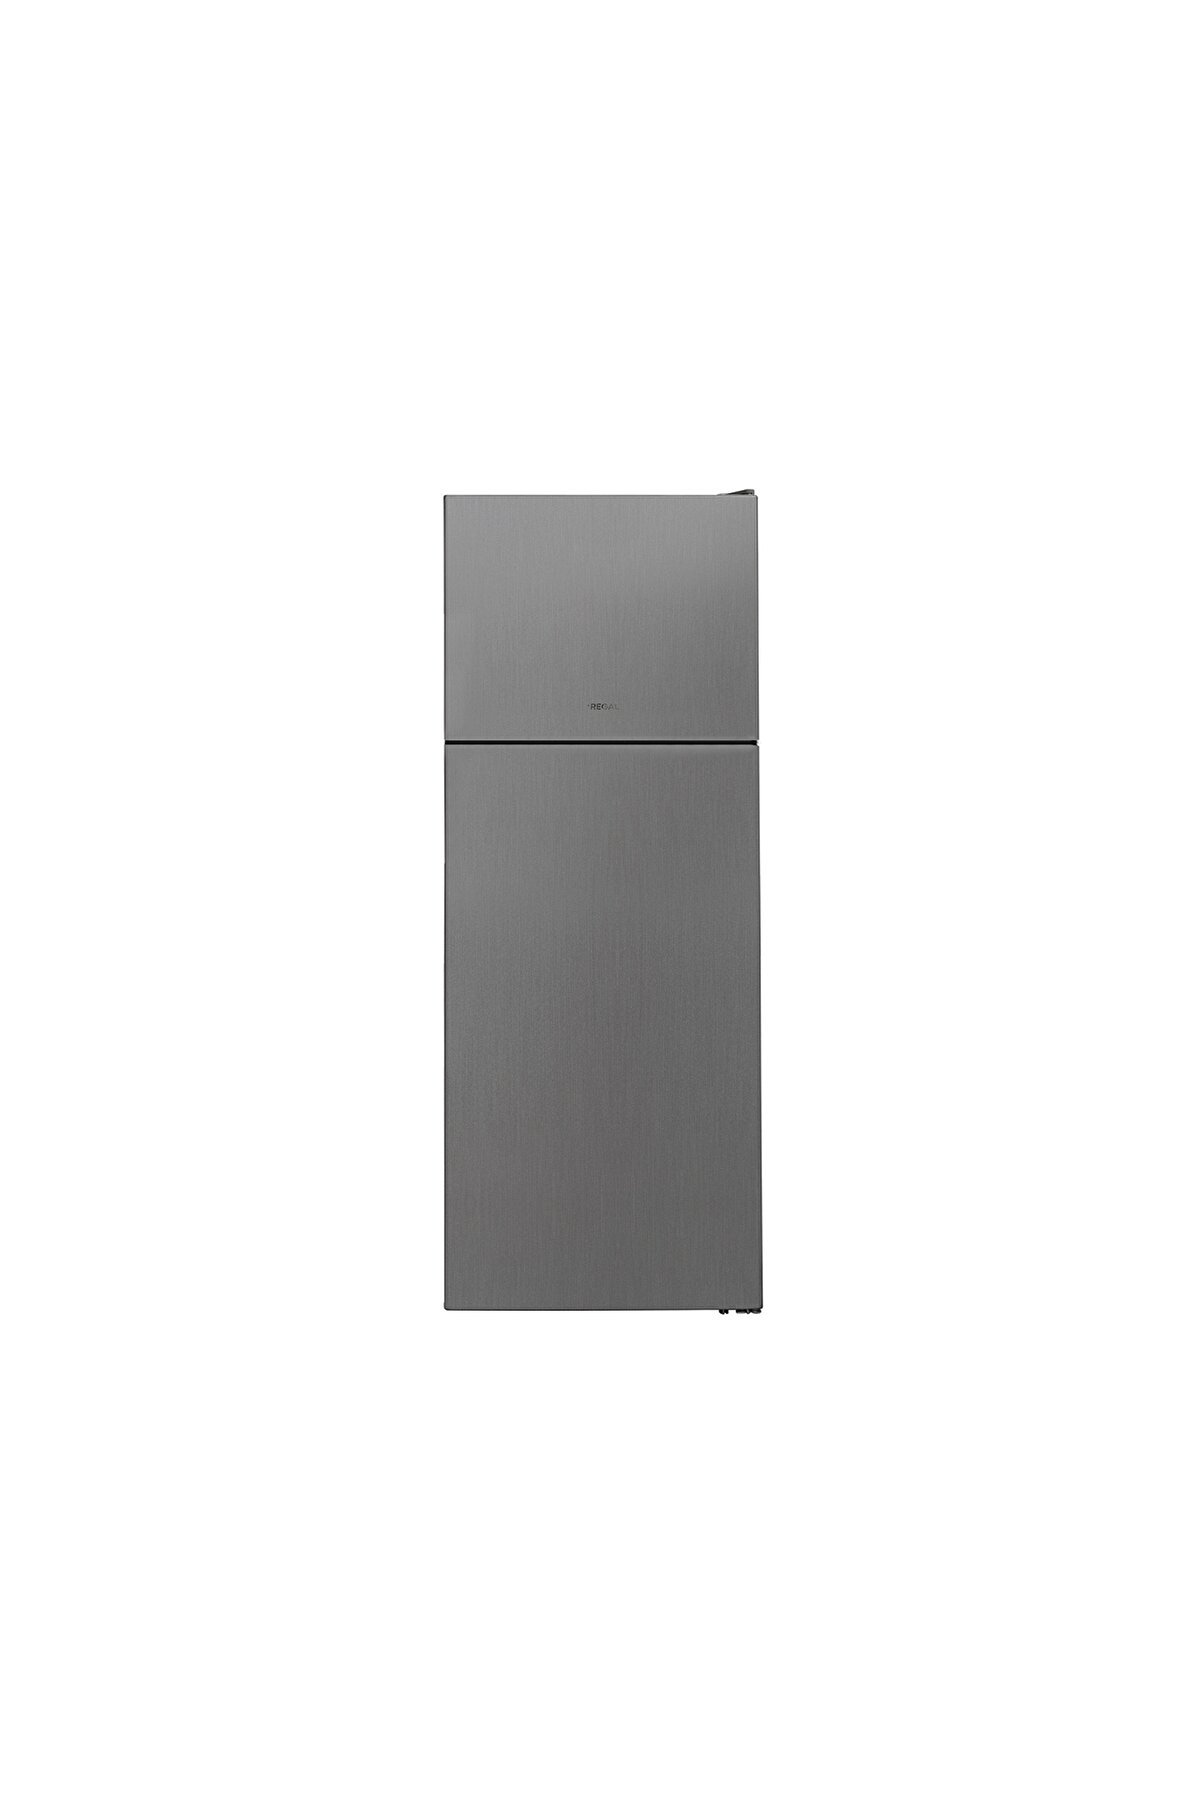 Regal ST 47010  IG Buzdolabı